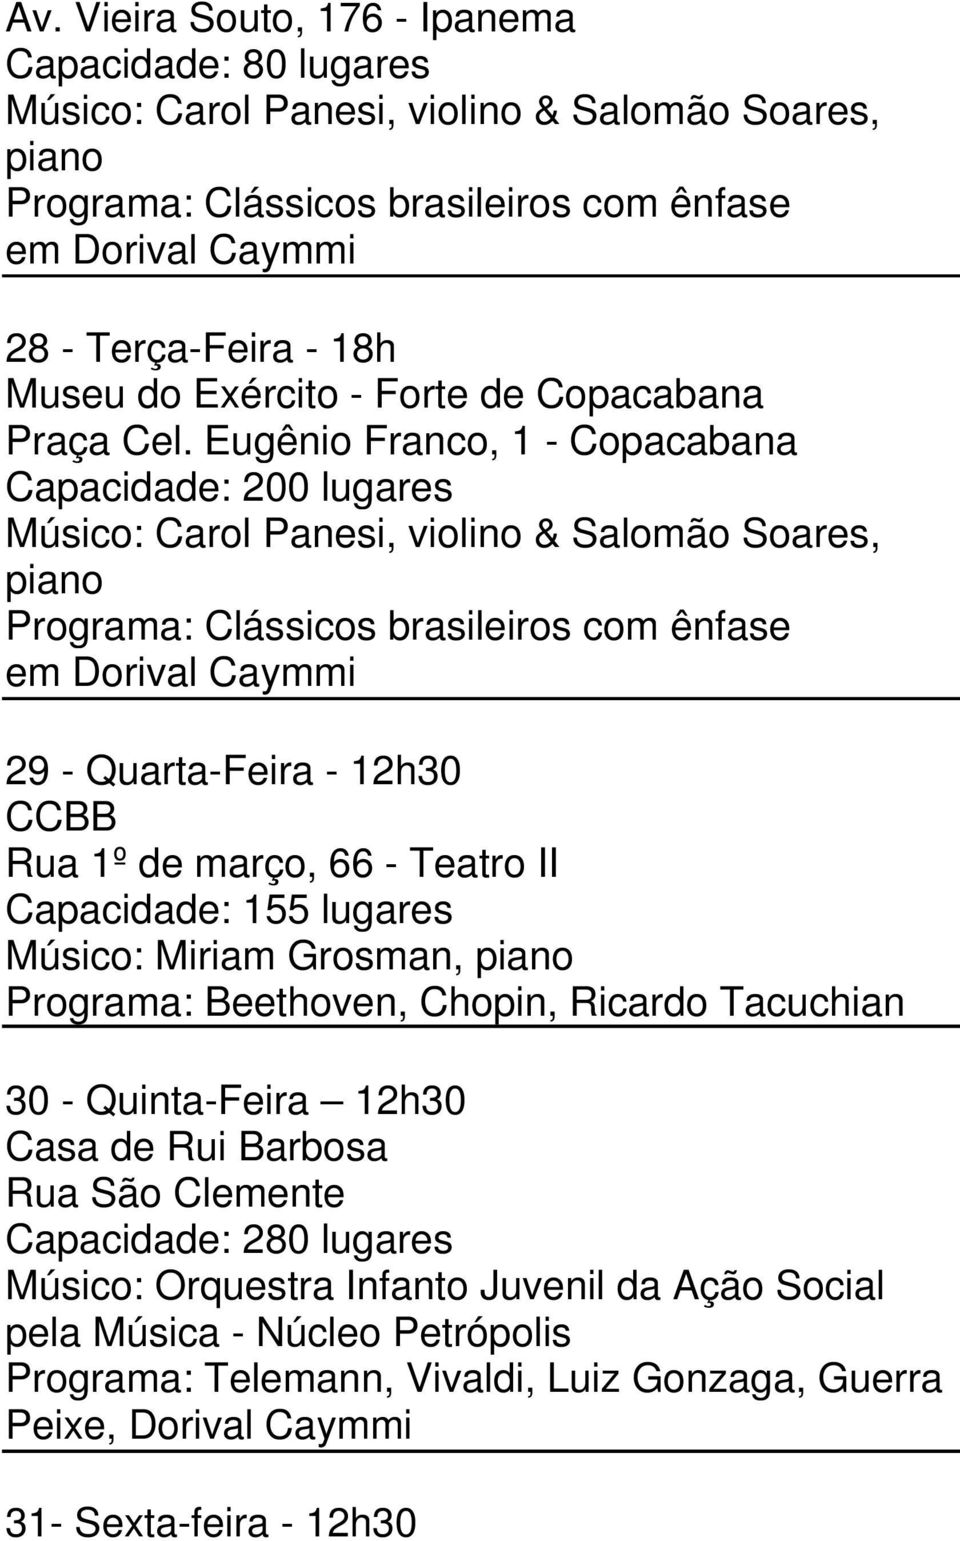 Eugênio Franco, 1 - Copacabana Capacidade: 200 lugares Músico: Carol Panesi, violino & Salomão Soares, piano Programa: Clássicos brasileiros com ênfase em Dorival Caymmi 29 - Quarta-Feira - 12h30